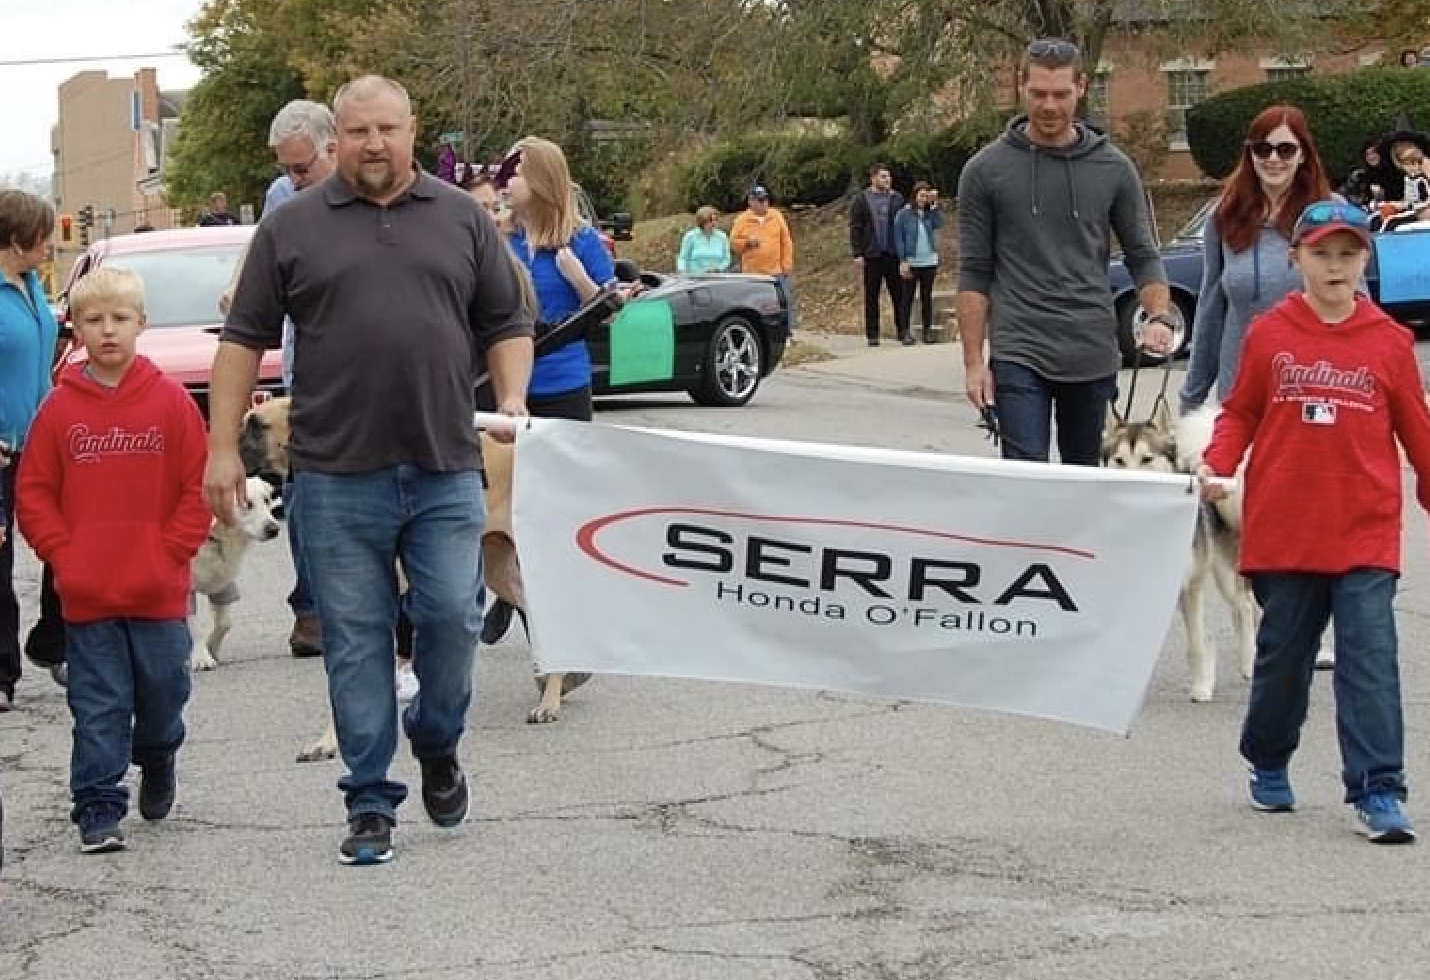 Serra Honda Banner in a parade